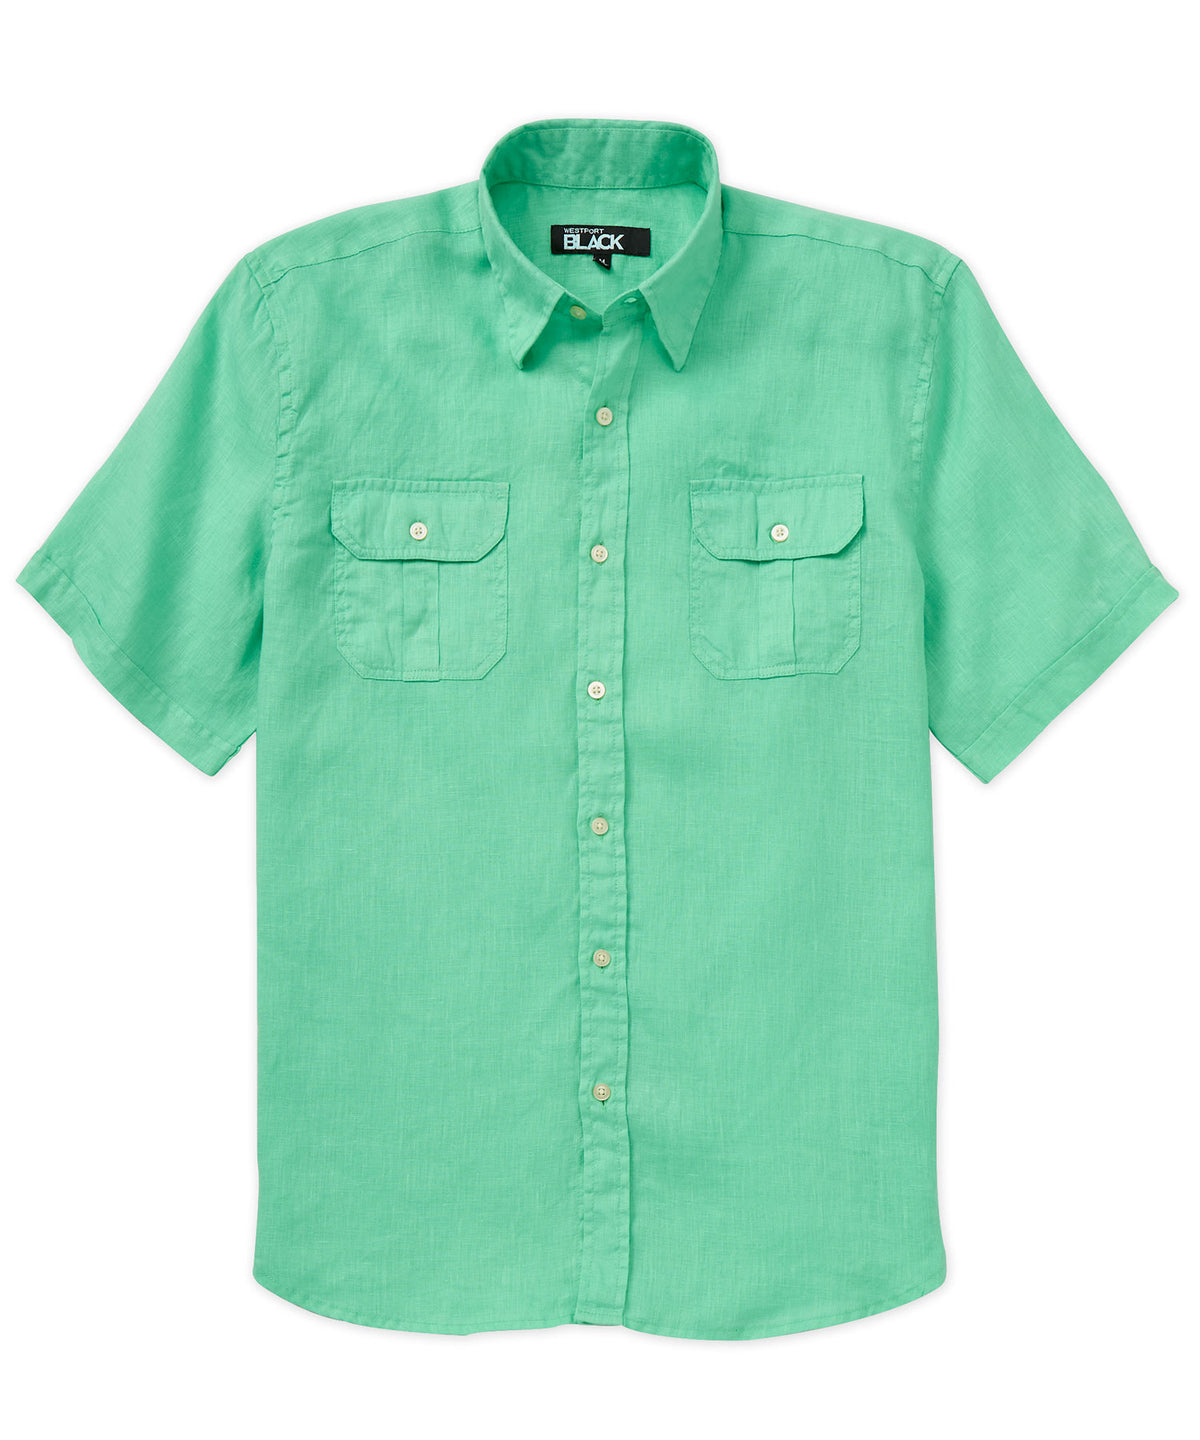 Westport Black Short Sleeve Linen Button-Under Collar Safari Shirt